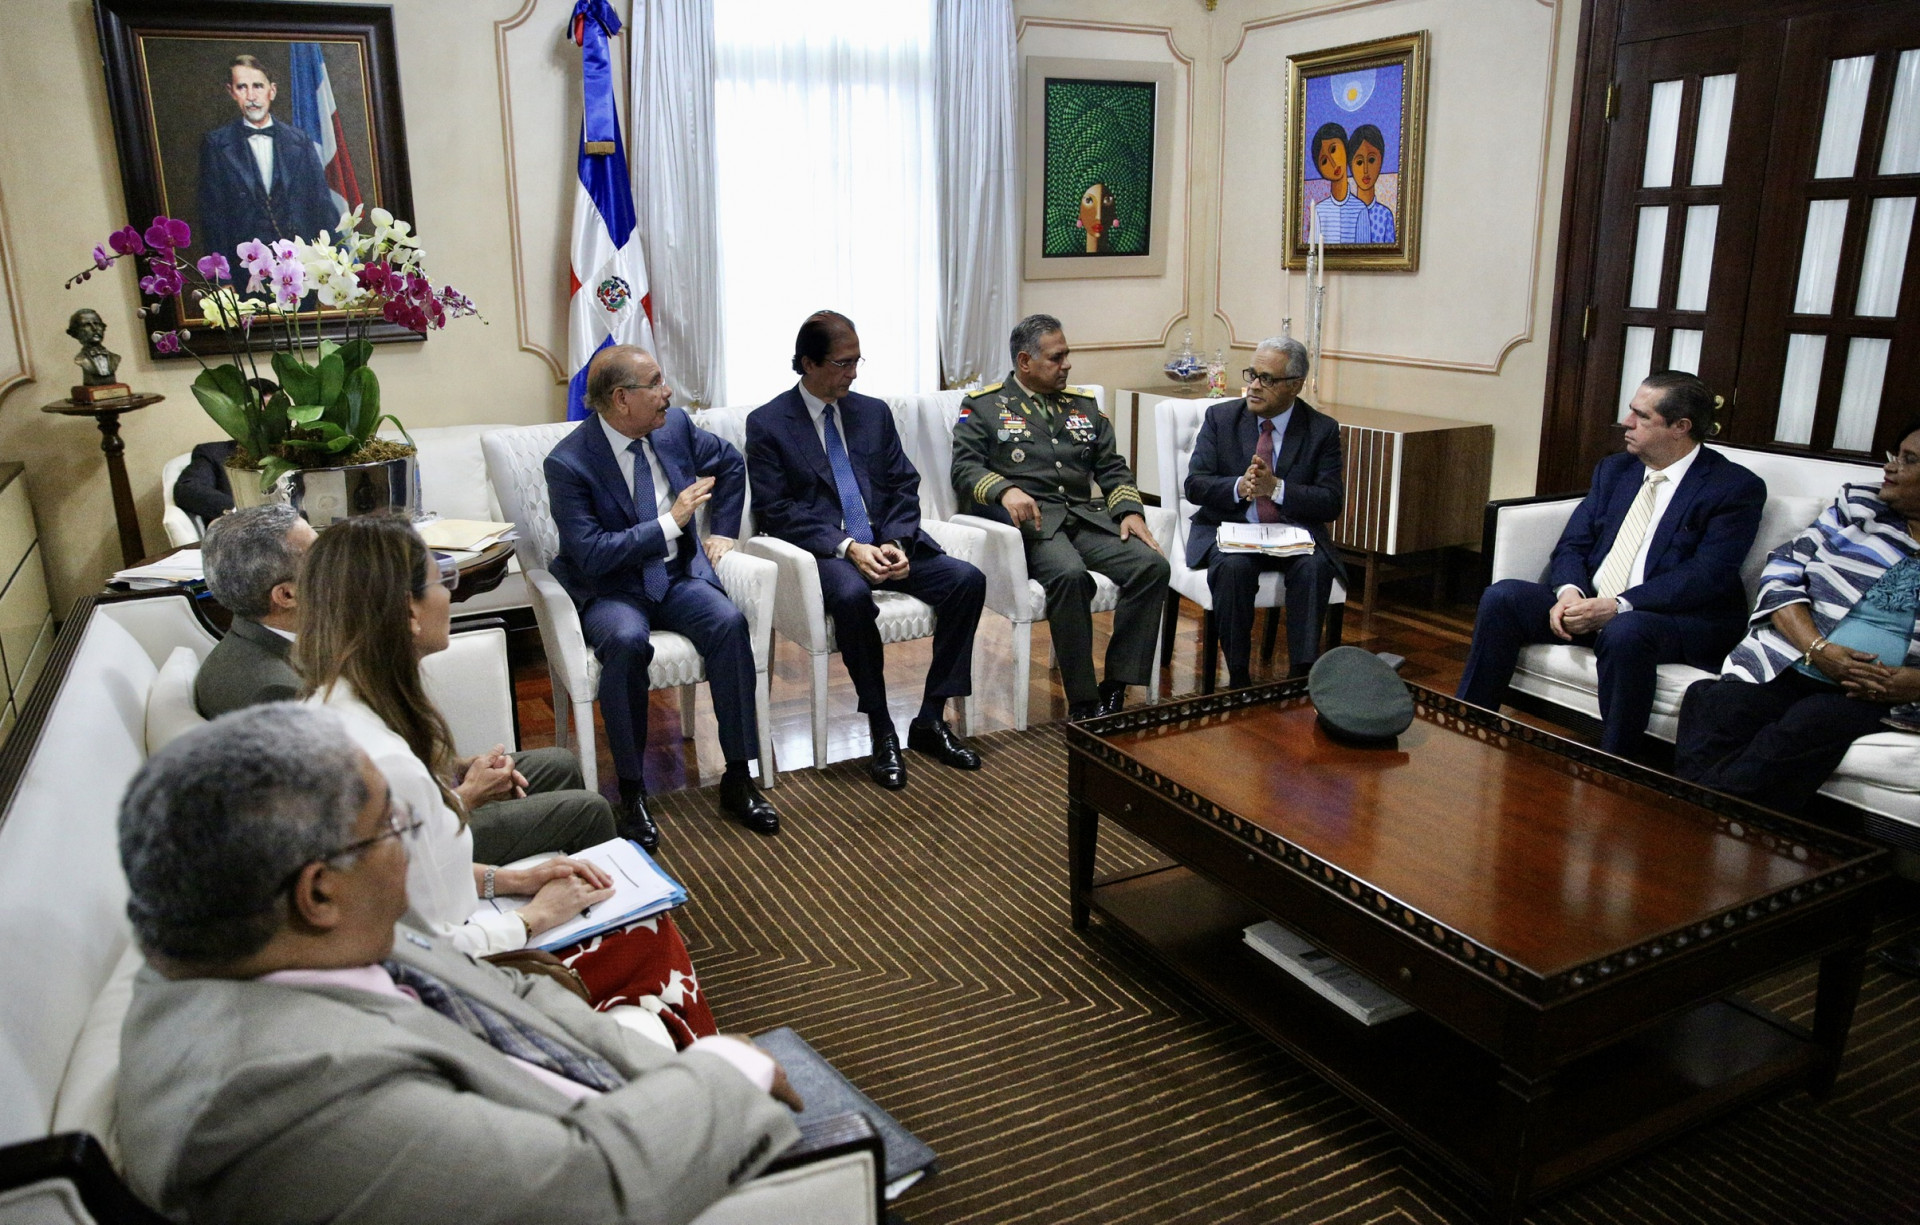 REPÚBLICA DOMINICANA: Coronavirus no está circulando en el país, lo que tenemos es un caso importado: ministro de Salud Pública tras reunión con Danilo Medina